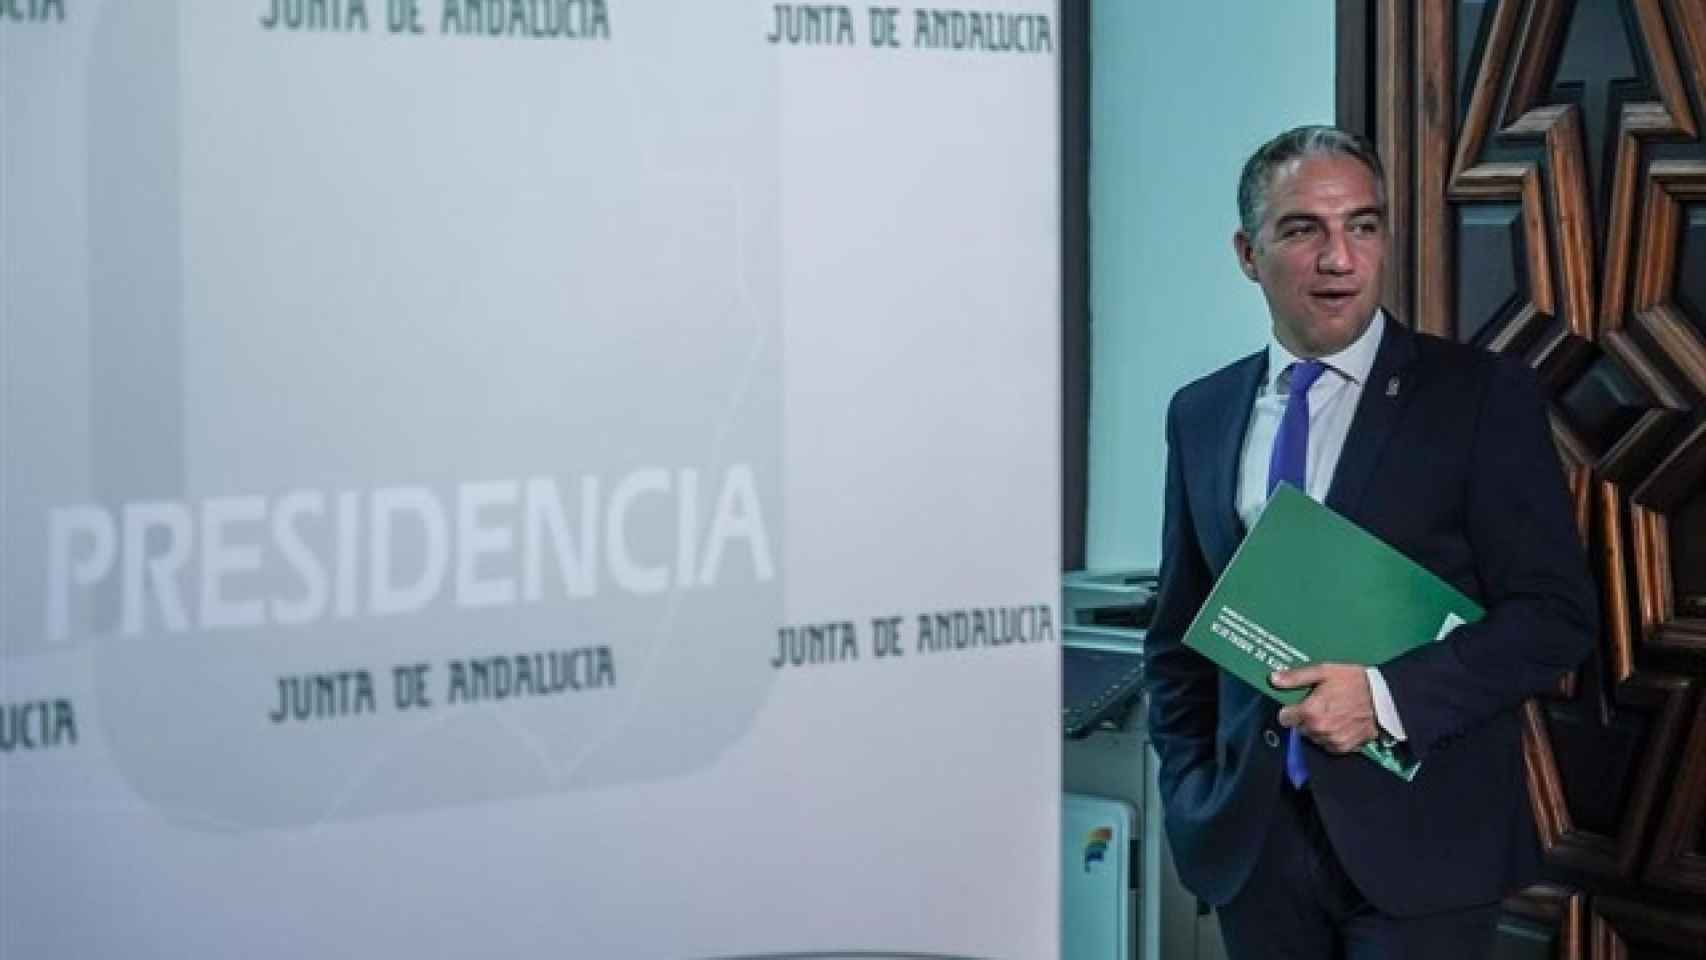 Elías Bendodo, portavoz de la Junta de Andalucía.